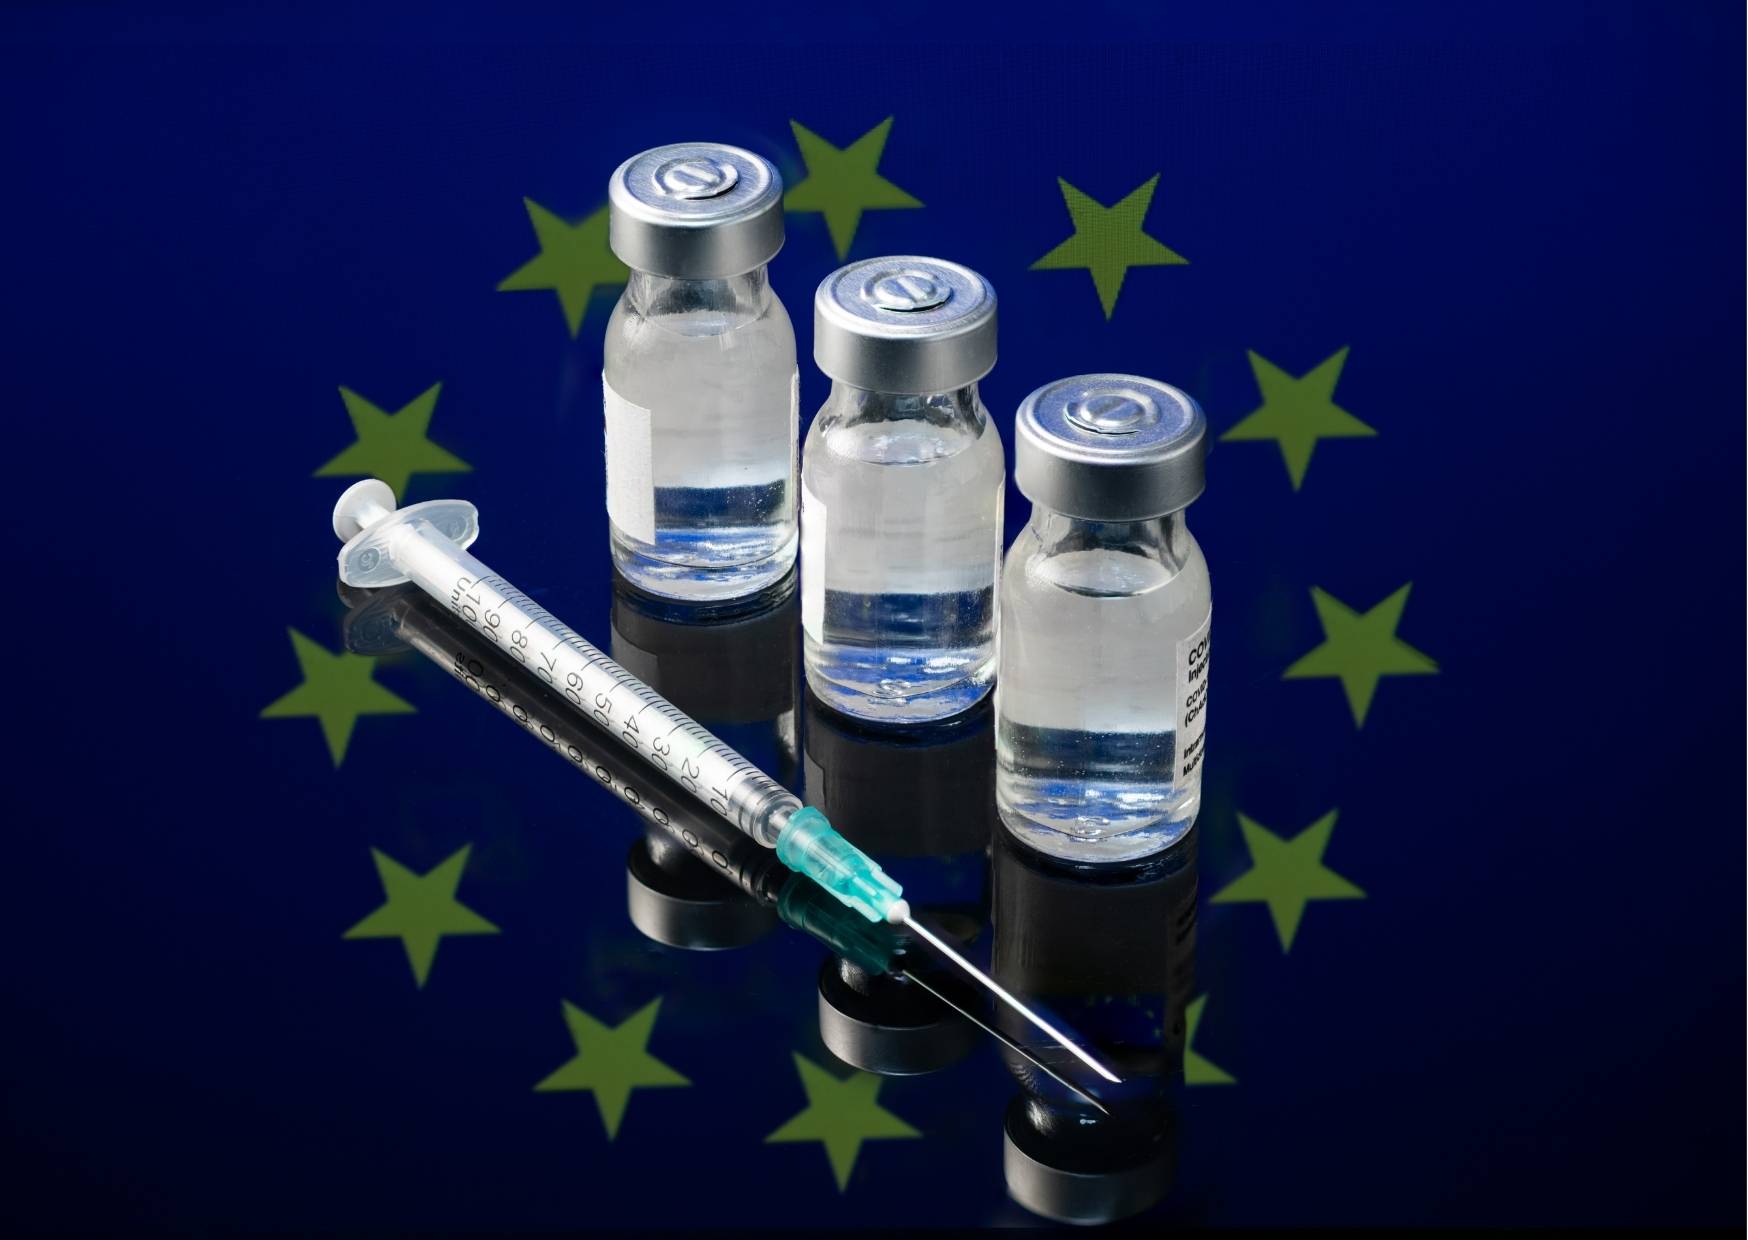 איתי מור סיפר בערוץ 20 על מצב החיסונים במדינות האיחוד האירופי